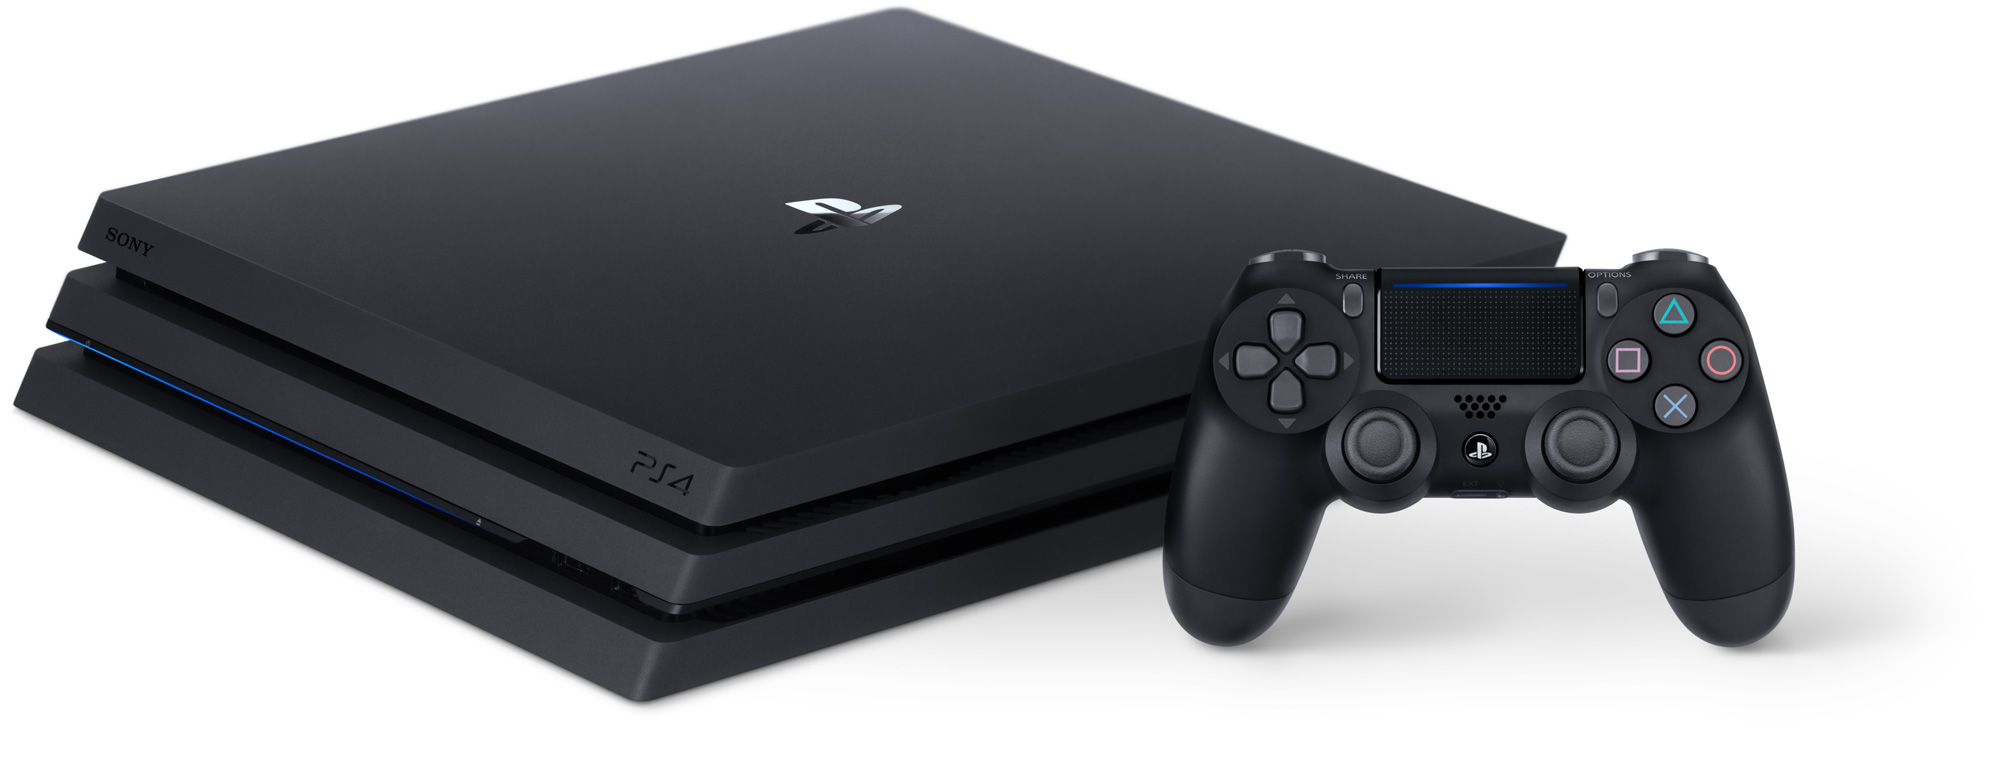 Sony annuncia i titoli giapponesi supportati da PlayStation 4 Pro